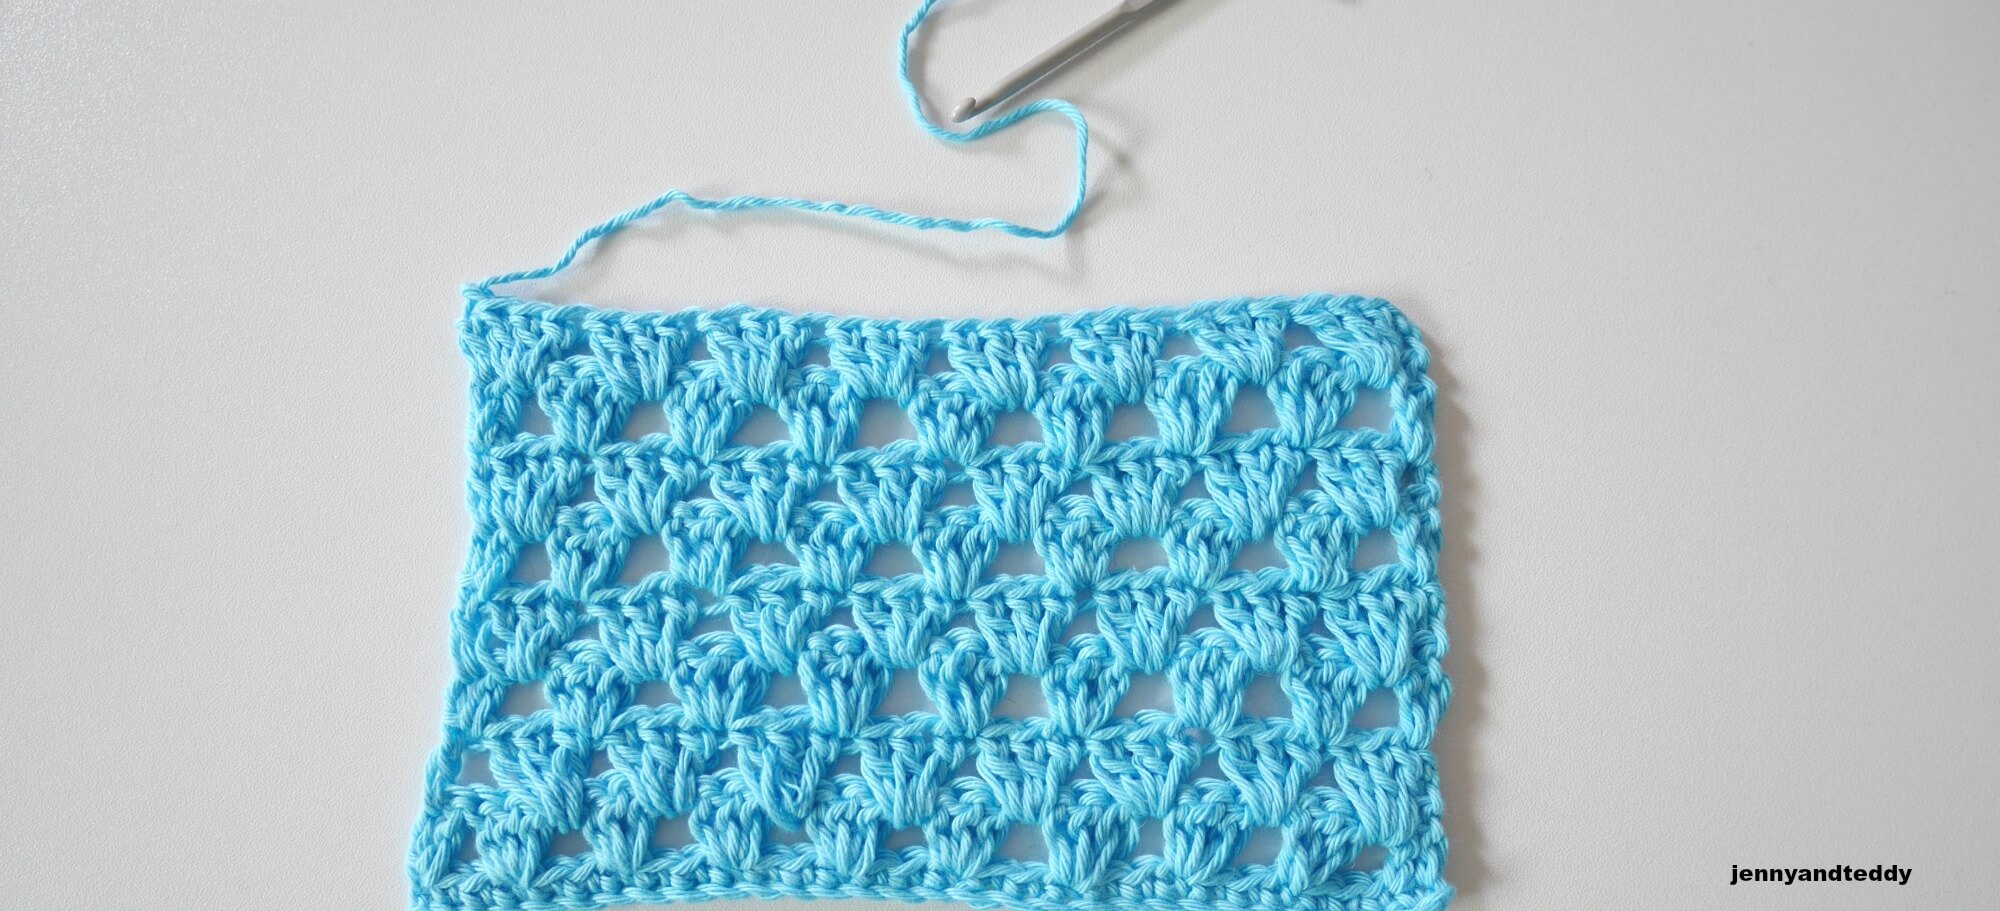 granny easy crochet stitches tutorail by jennyandteddy